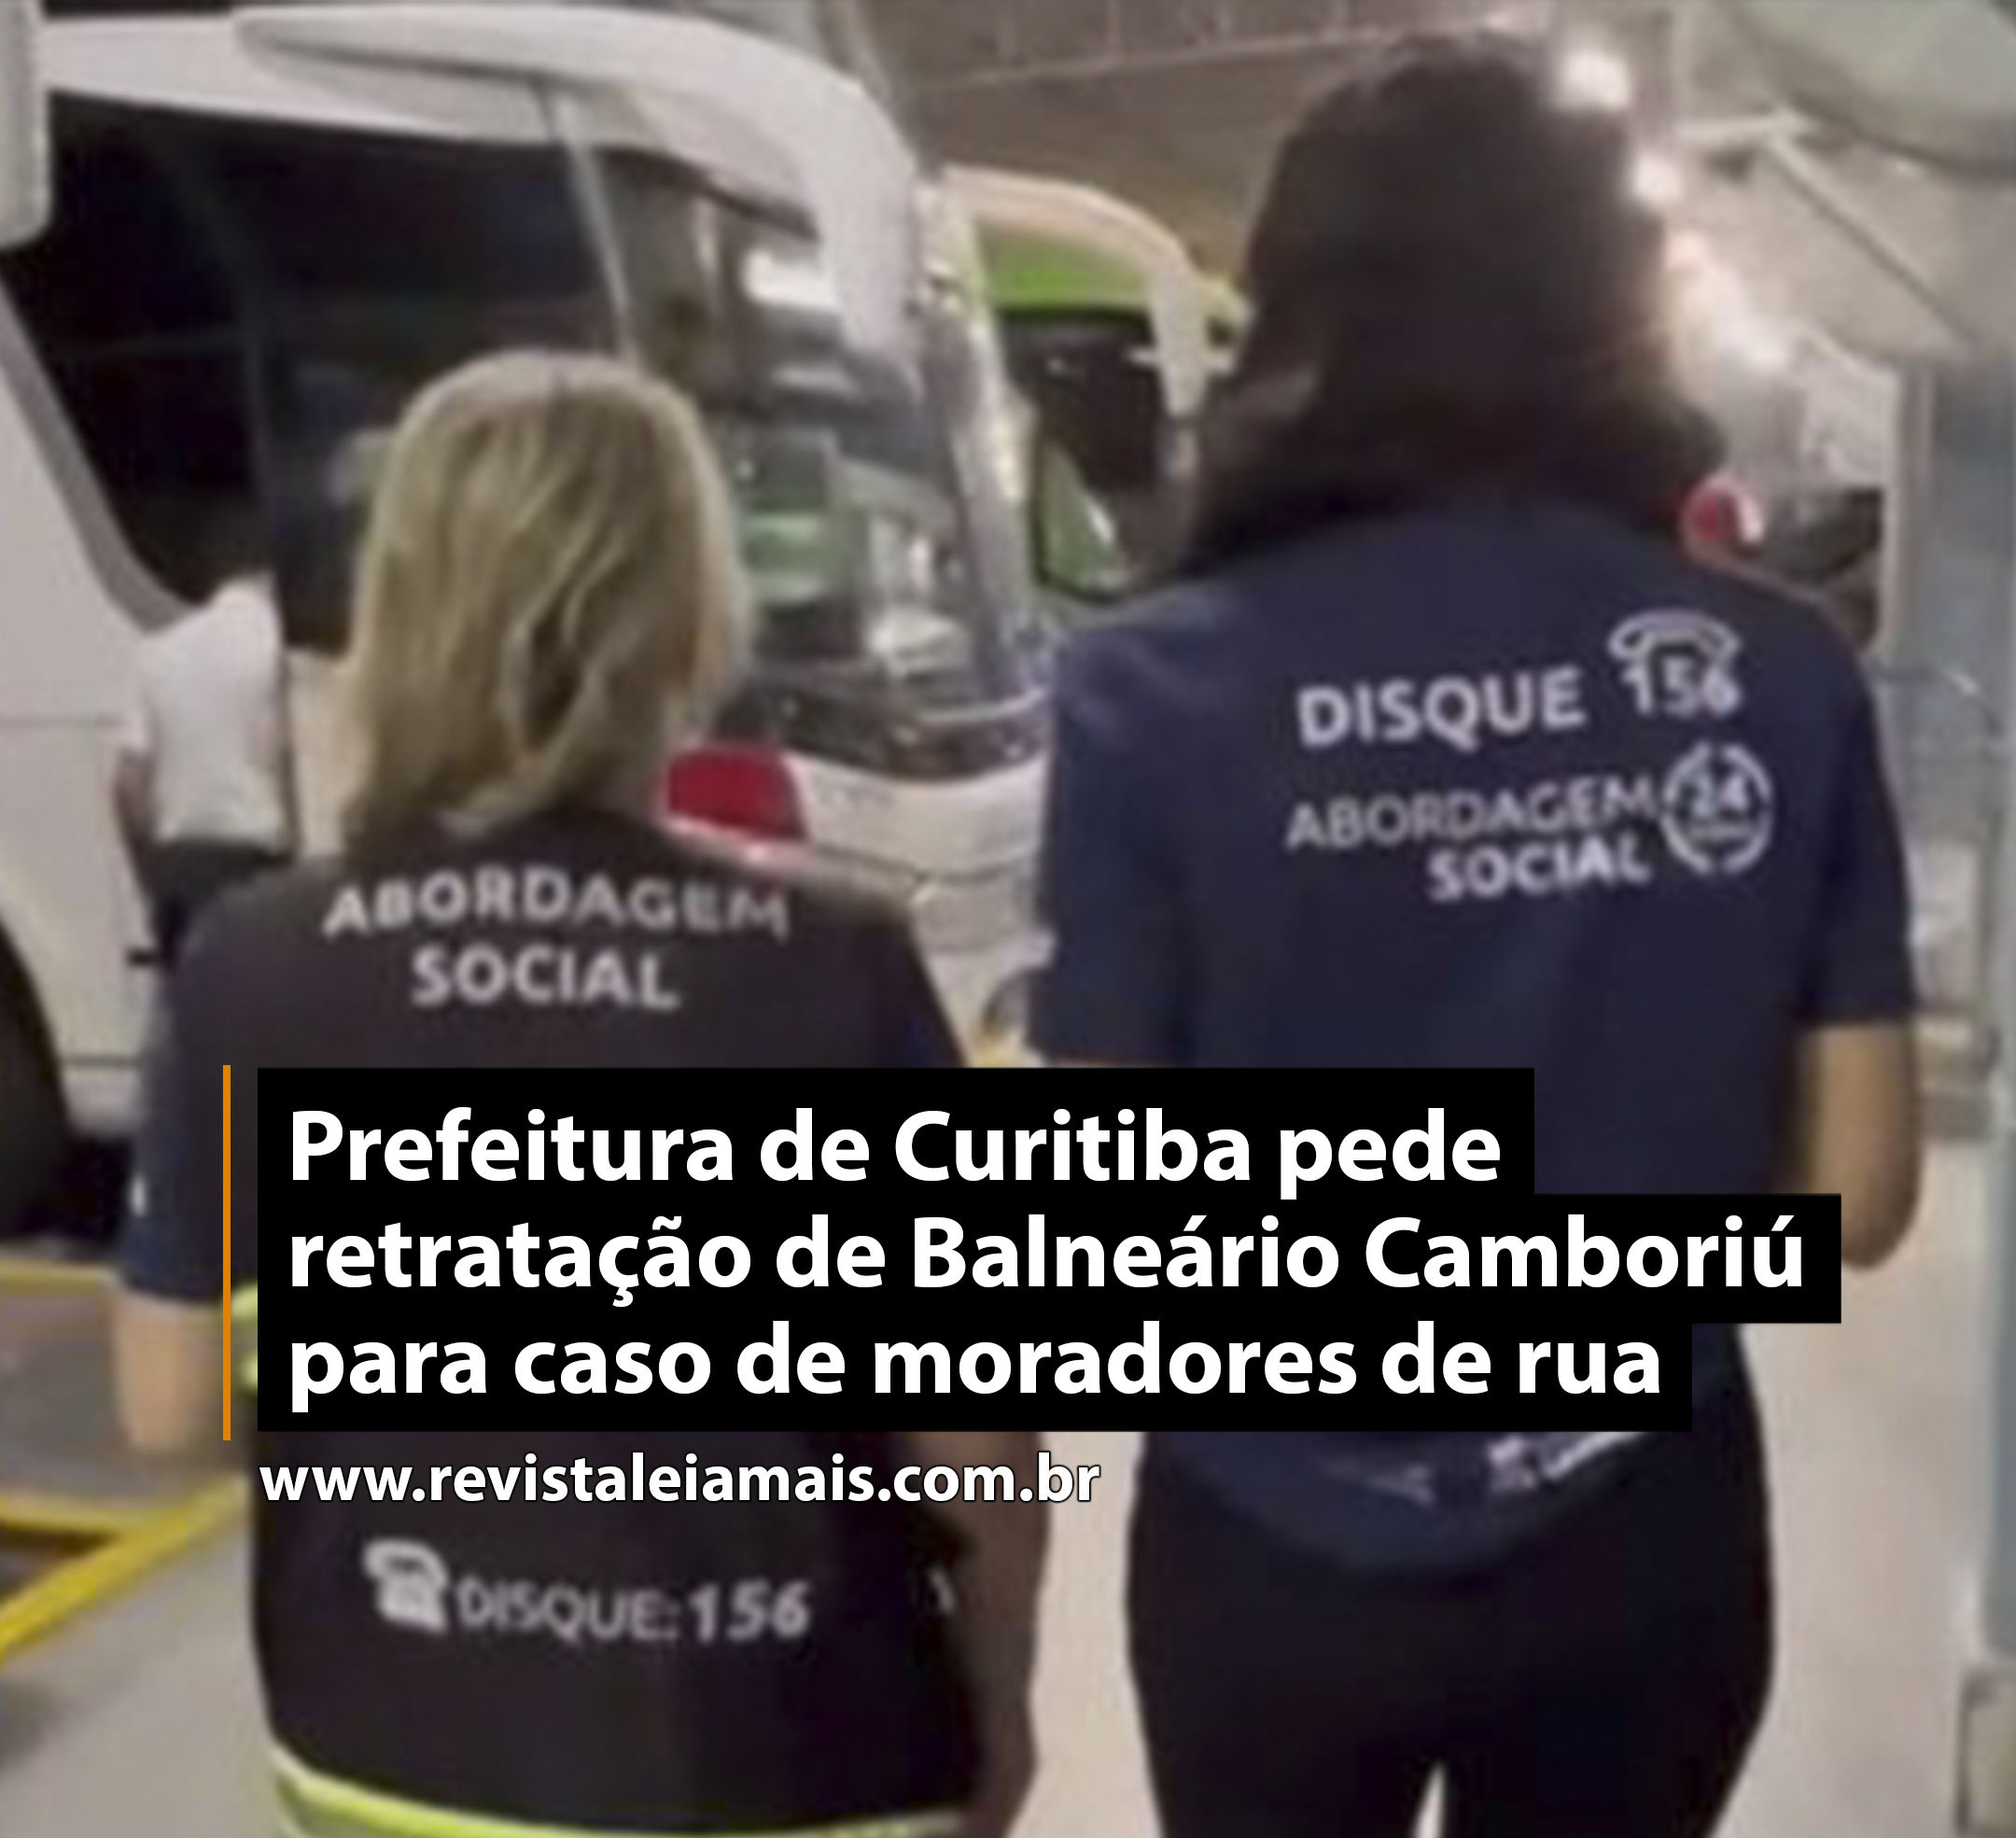 Prefeitura de Curitiba pede retratação de Balneário Camboriú para caso de moradores de rua